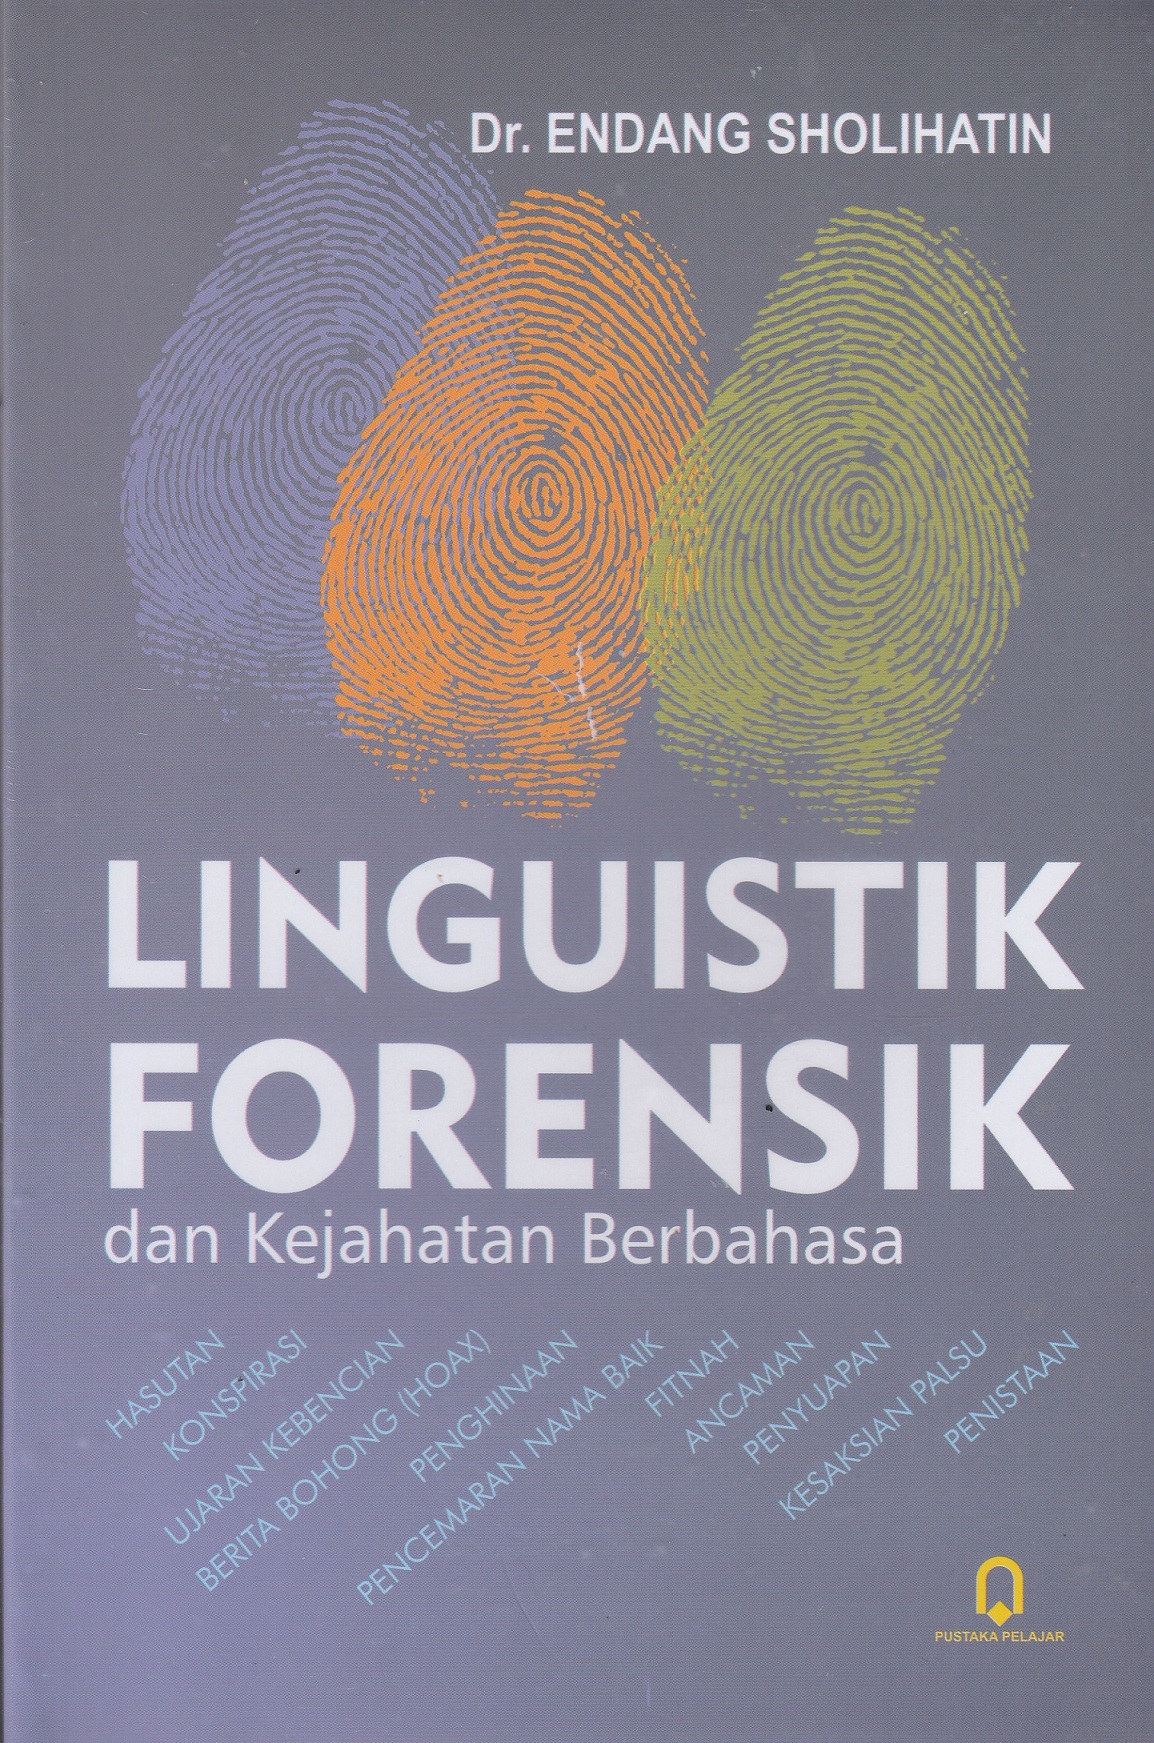 Linguistik Forensik dan Kejahatan Berbahasa